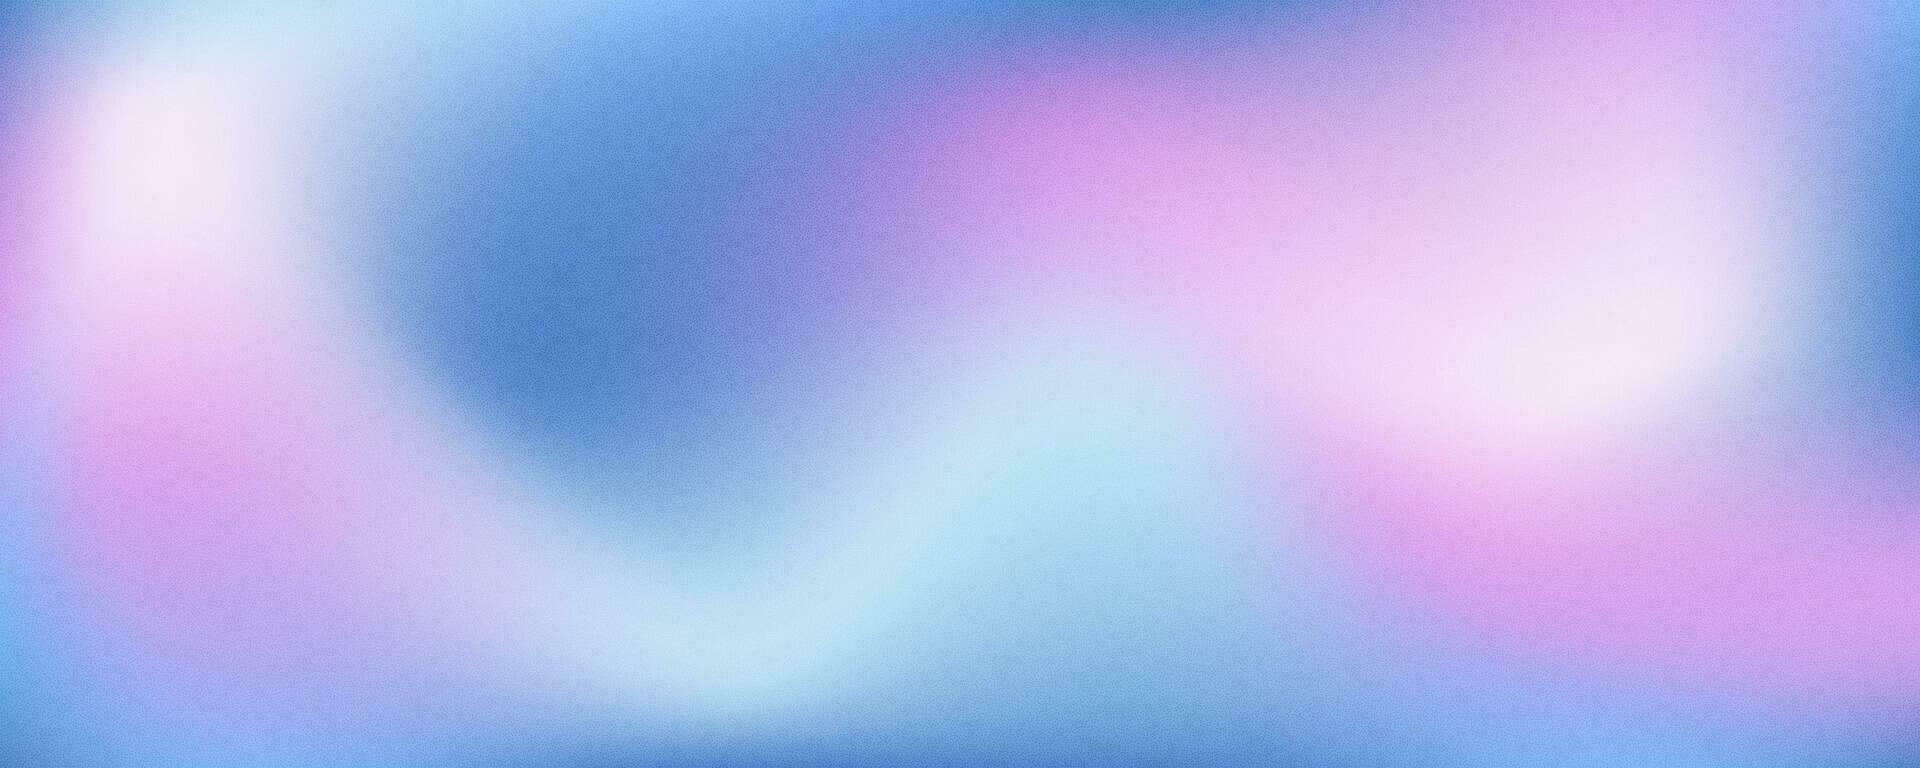 lutning färgad bakgrund. mjuk rosa och blå kornig gradering. suddig retro affisch med abstrakt ljud textur. vektor